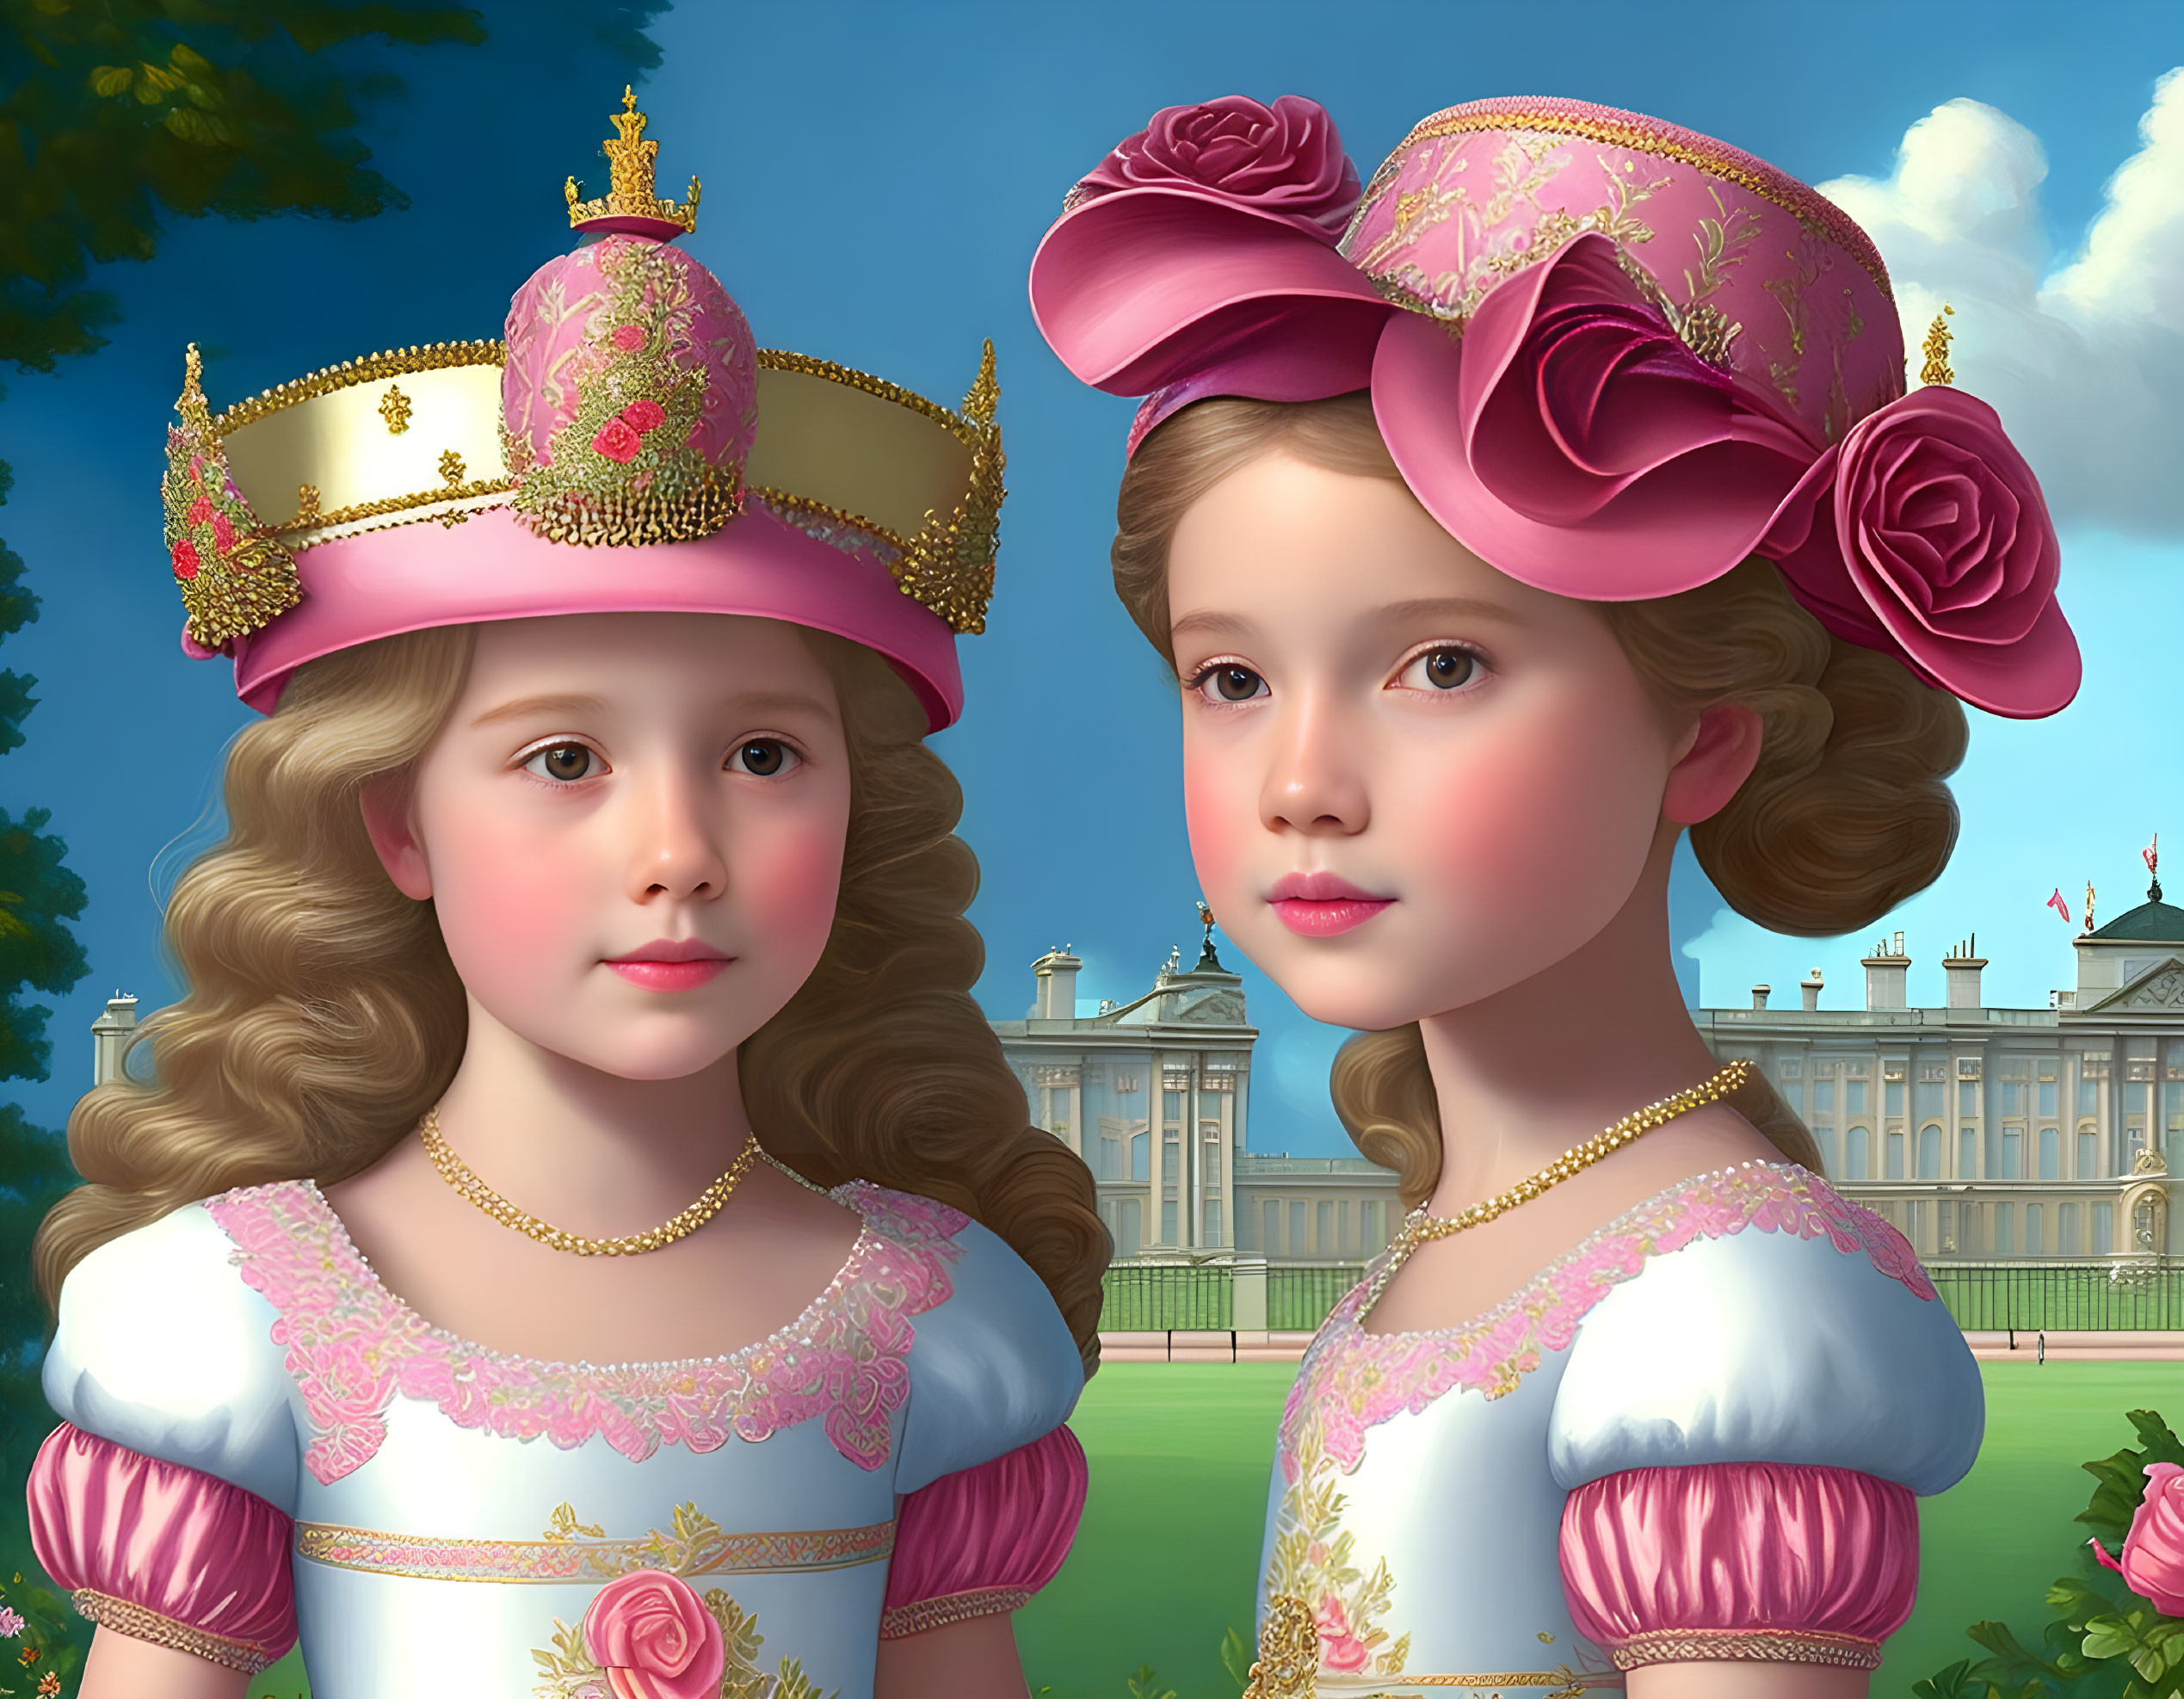 Little princesses